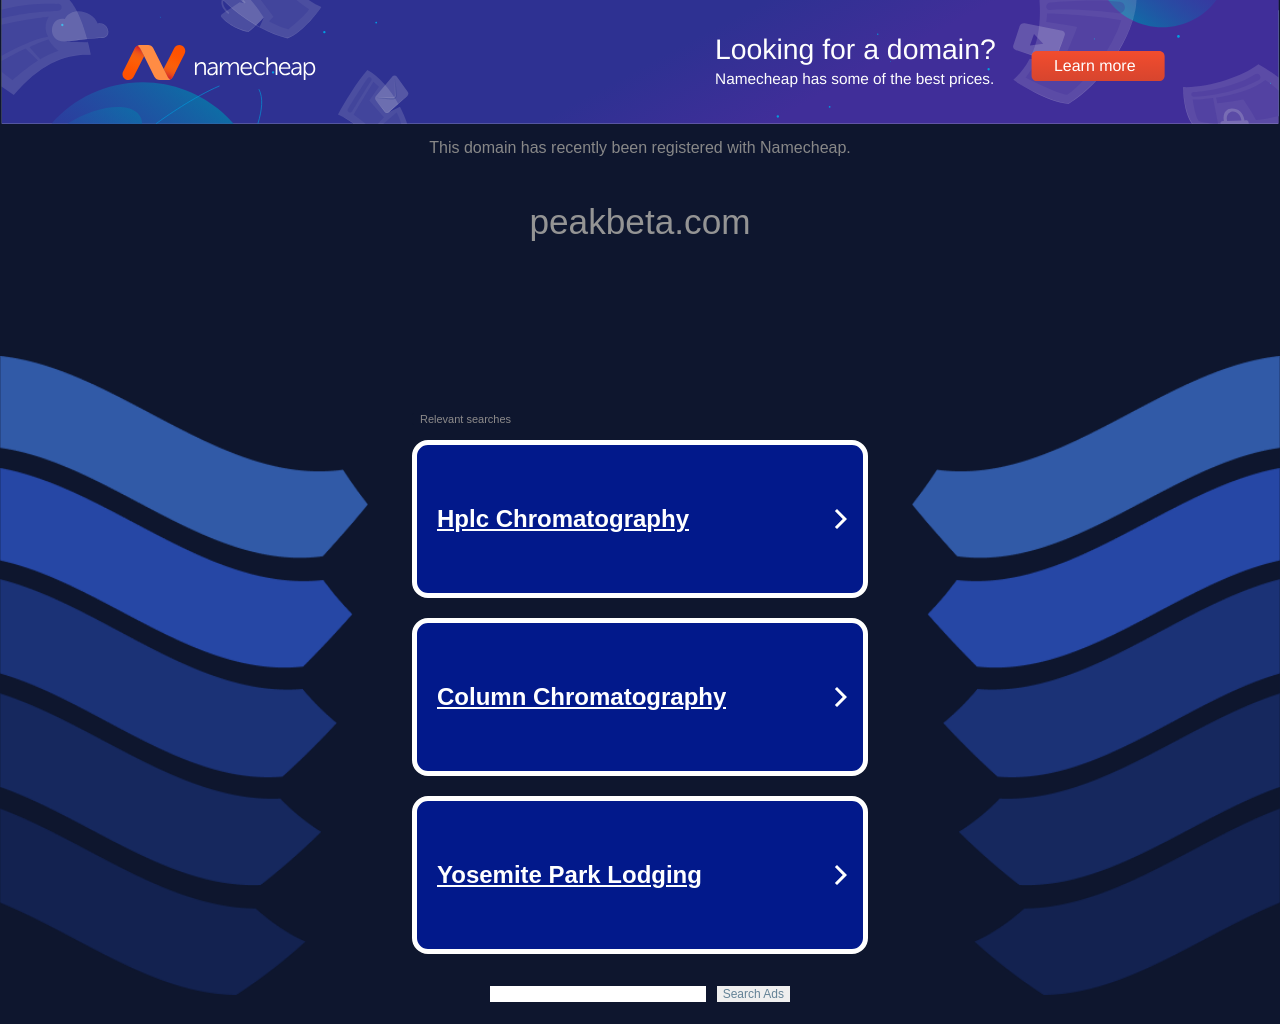 peakbeta.com